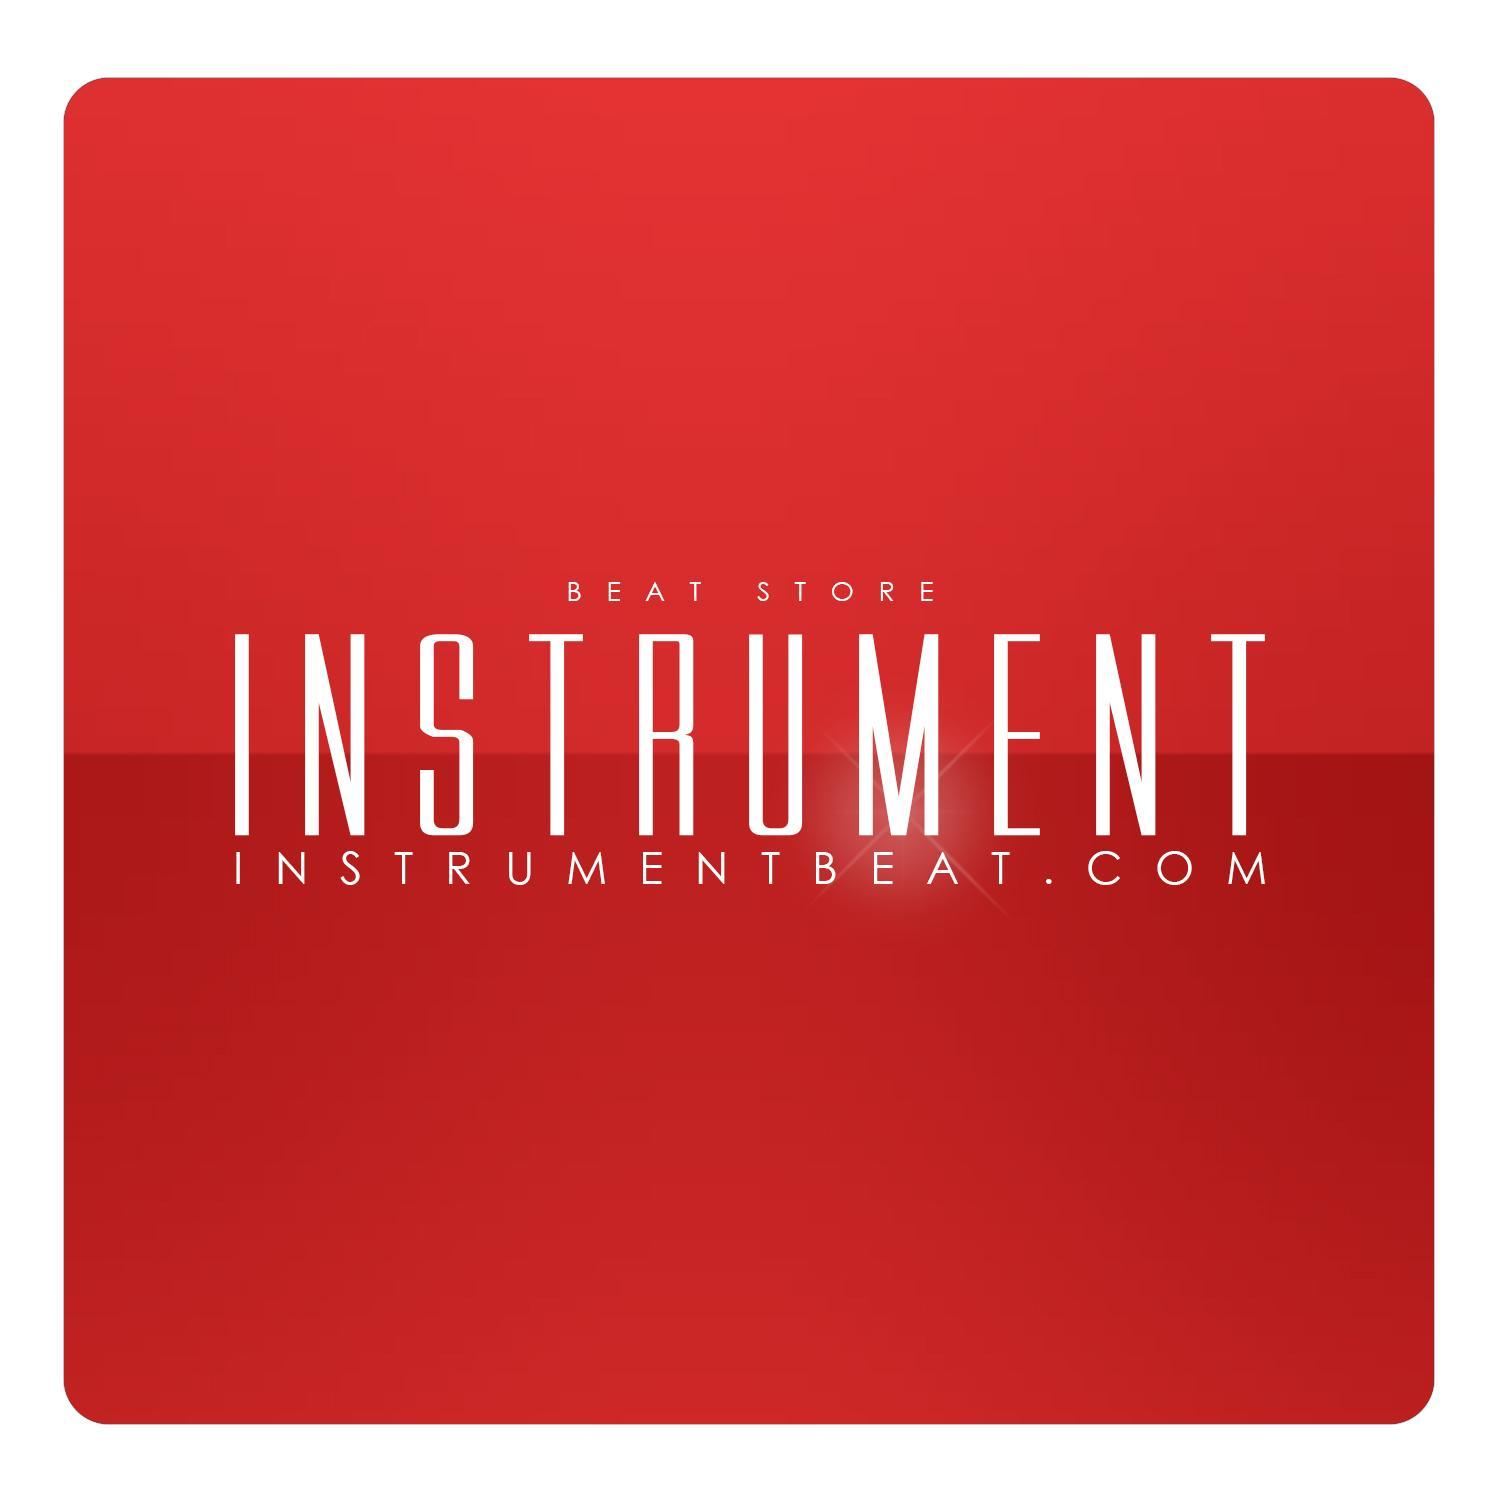 Beats en venta / Beats a pedido / Custom beats / Remixes / Edicion de audio / Mixing / Mastering / info@instrumentbeat.com / +569-76186418 Whatsapp